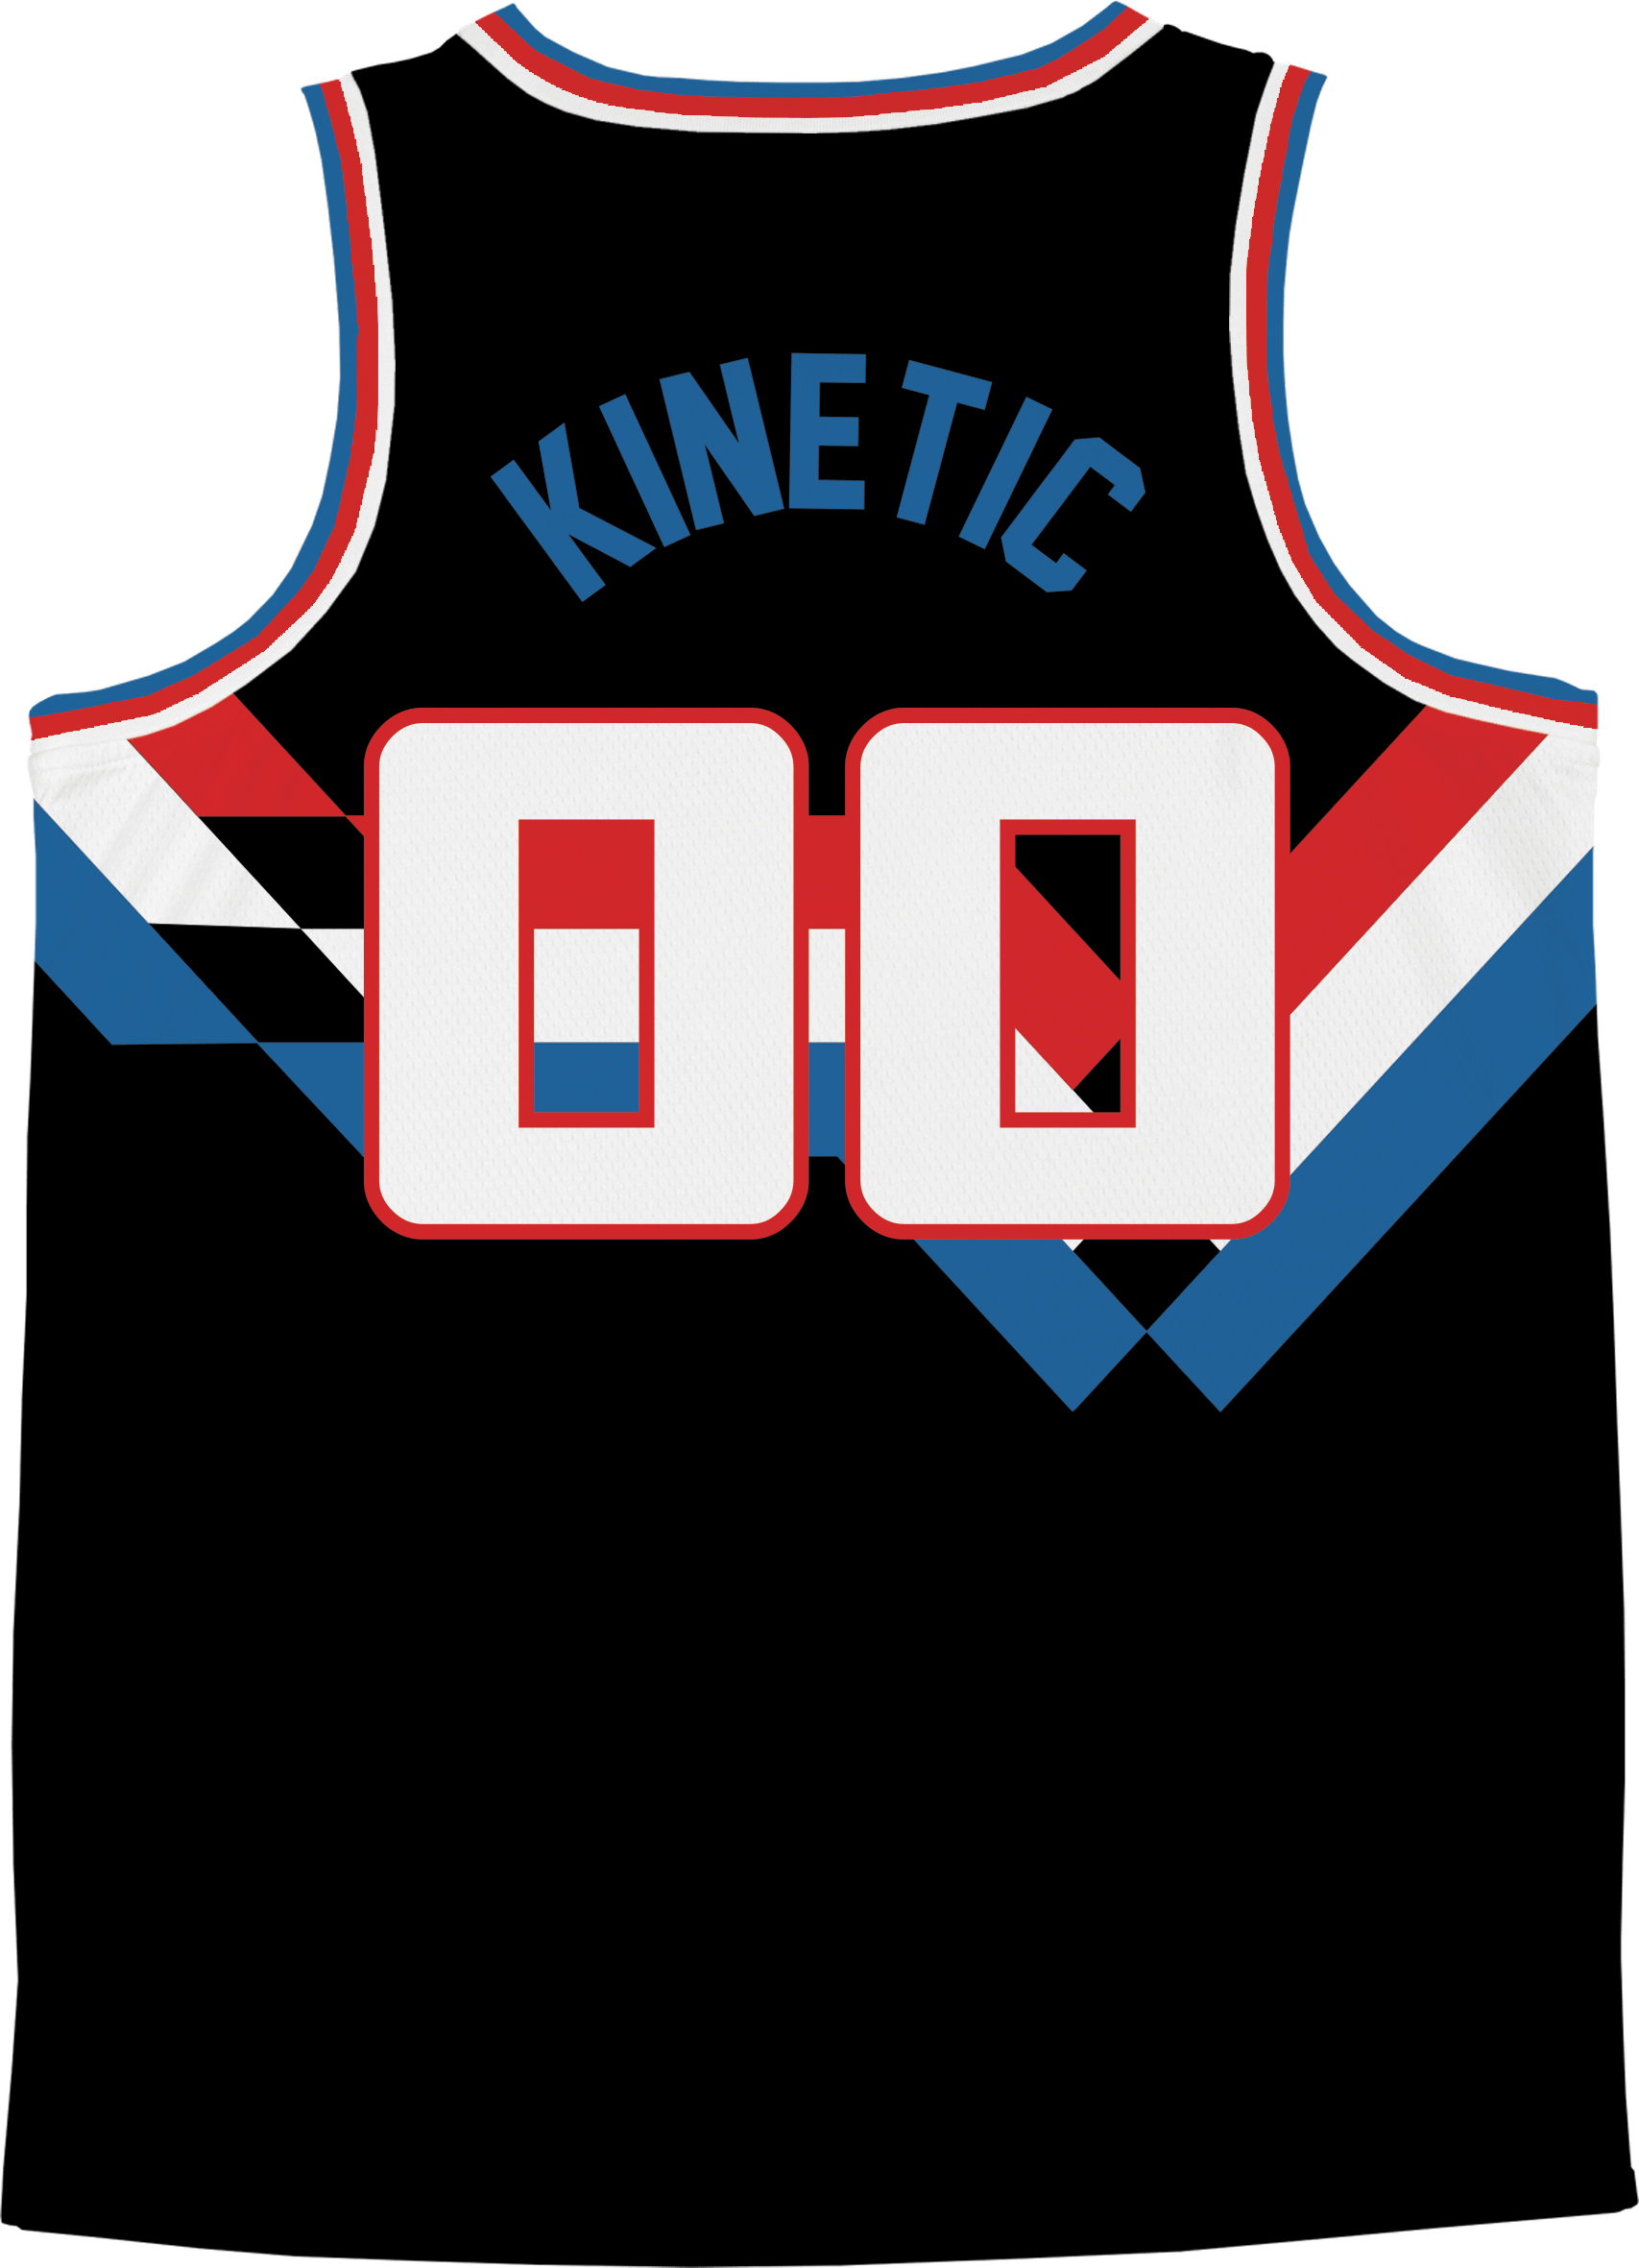 Beta Theta Pi - Victory Streak Basketball Jersey - Kinetic Society